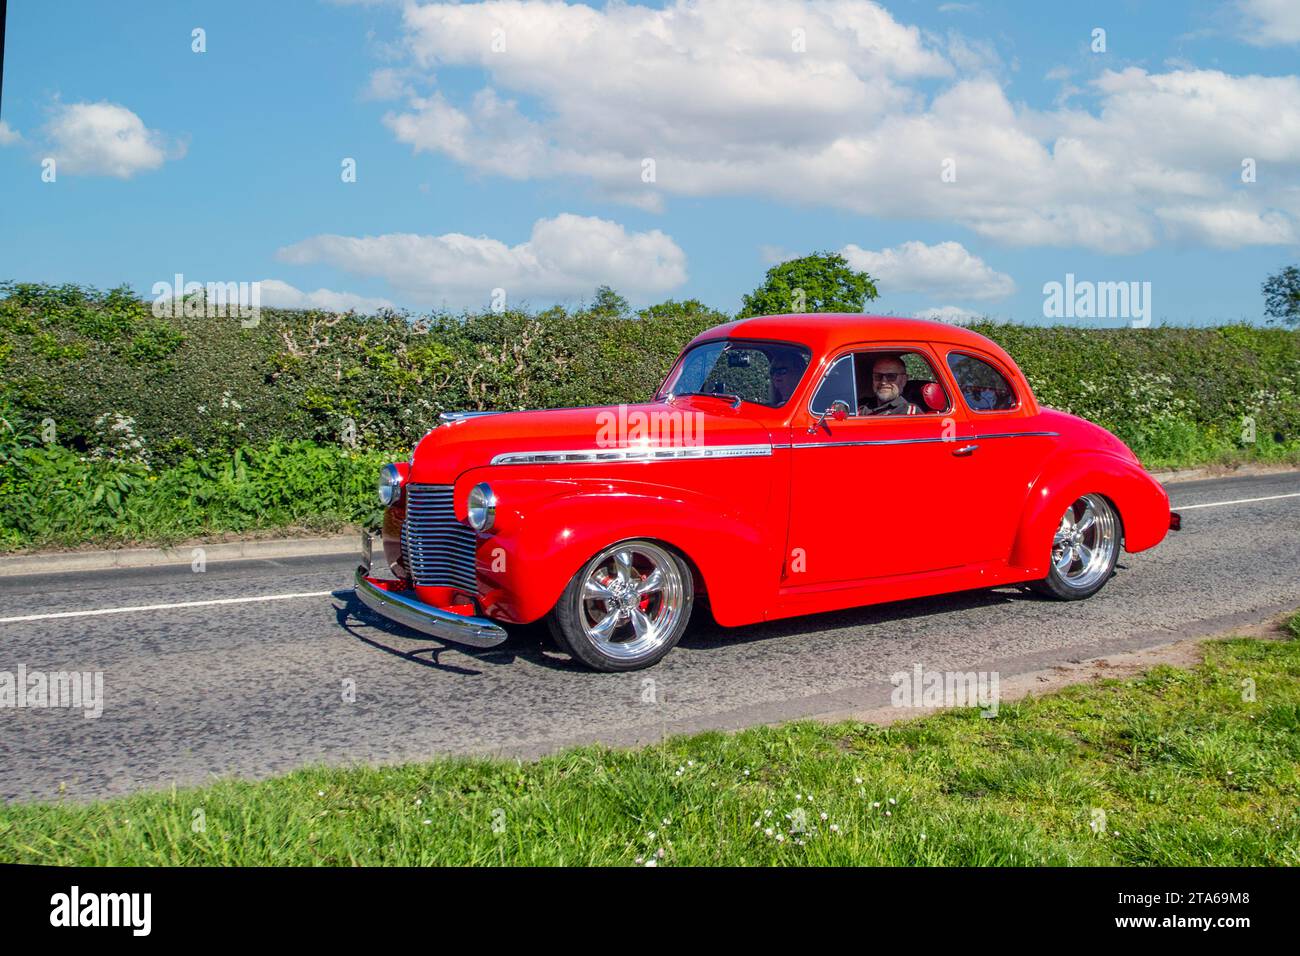 1940 40er Jahre Red American Chevrolet GMC. Große, benzinbetriebene Limousine mit 5700 ccm Hubraum, alte, restaurierte klassische Motoren, Autosammler, Autofahrer, historische Veteranenautos, die in Cheshire, Großbritannien, unterwegs sind Stockfoto